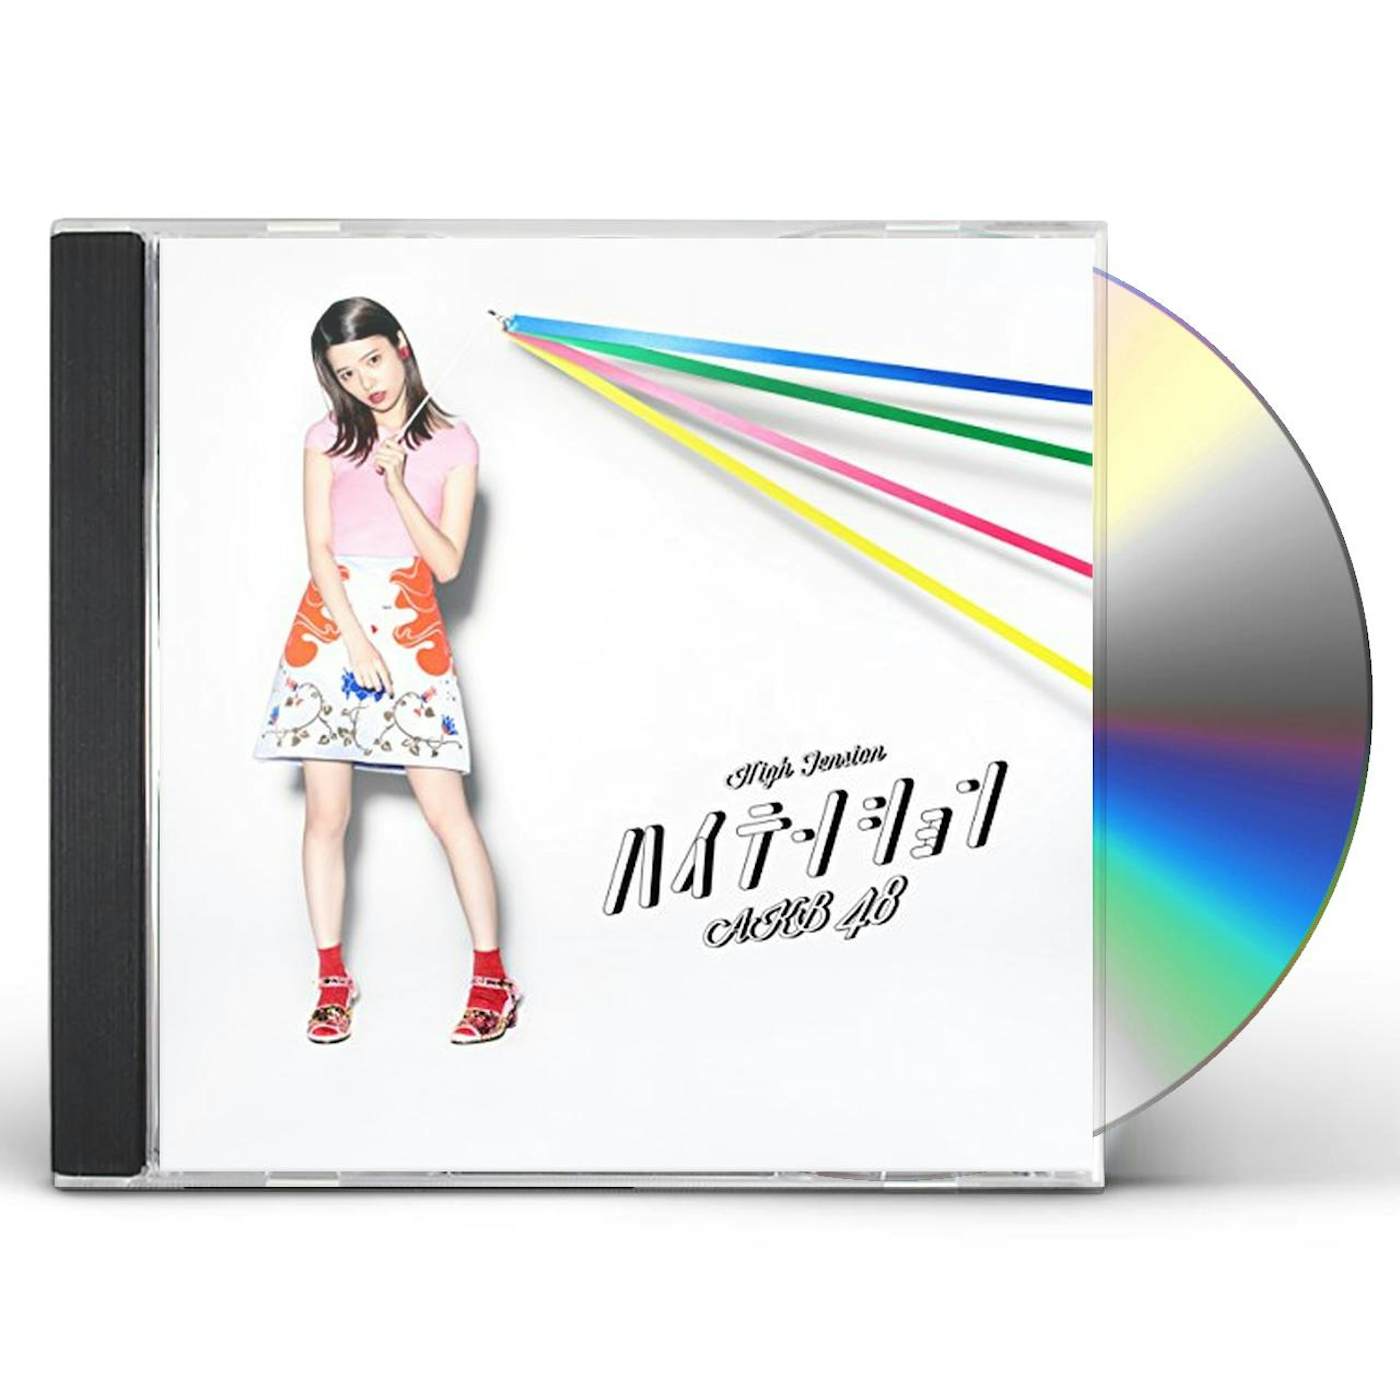 AKB48 HIGH TENSION: TYPE-I CD